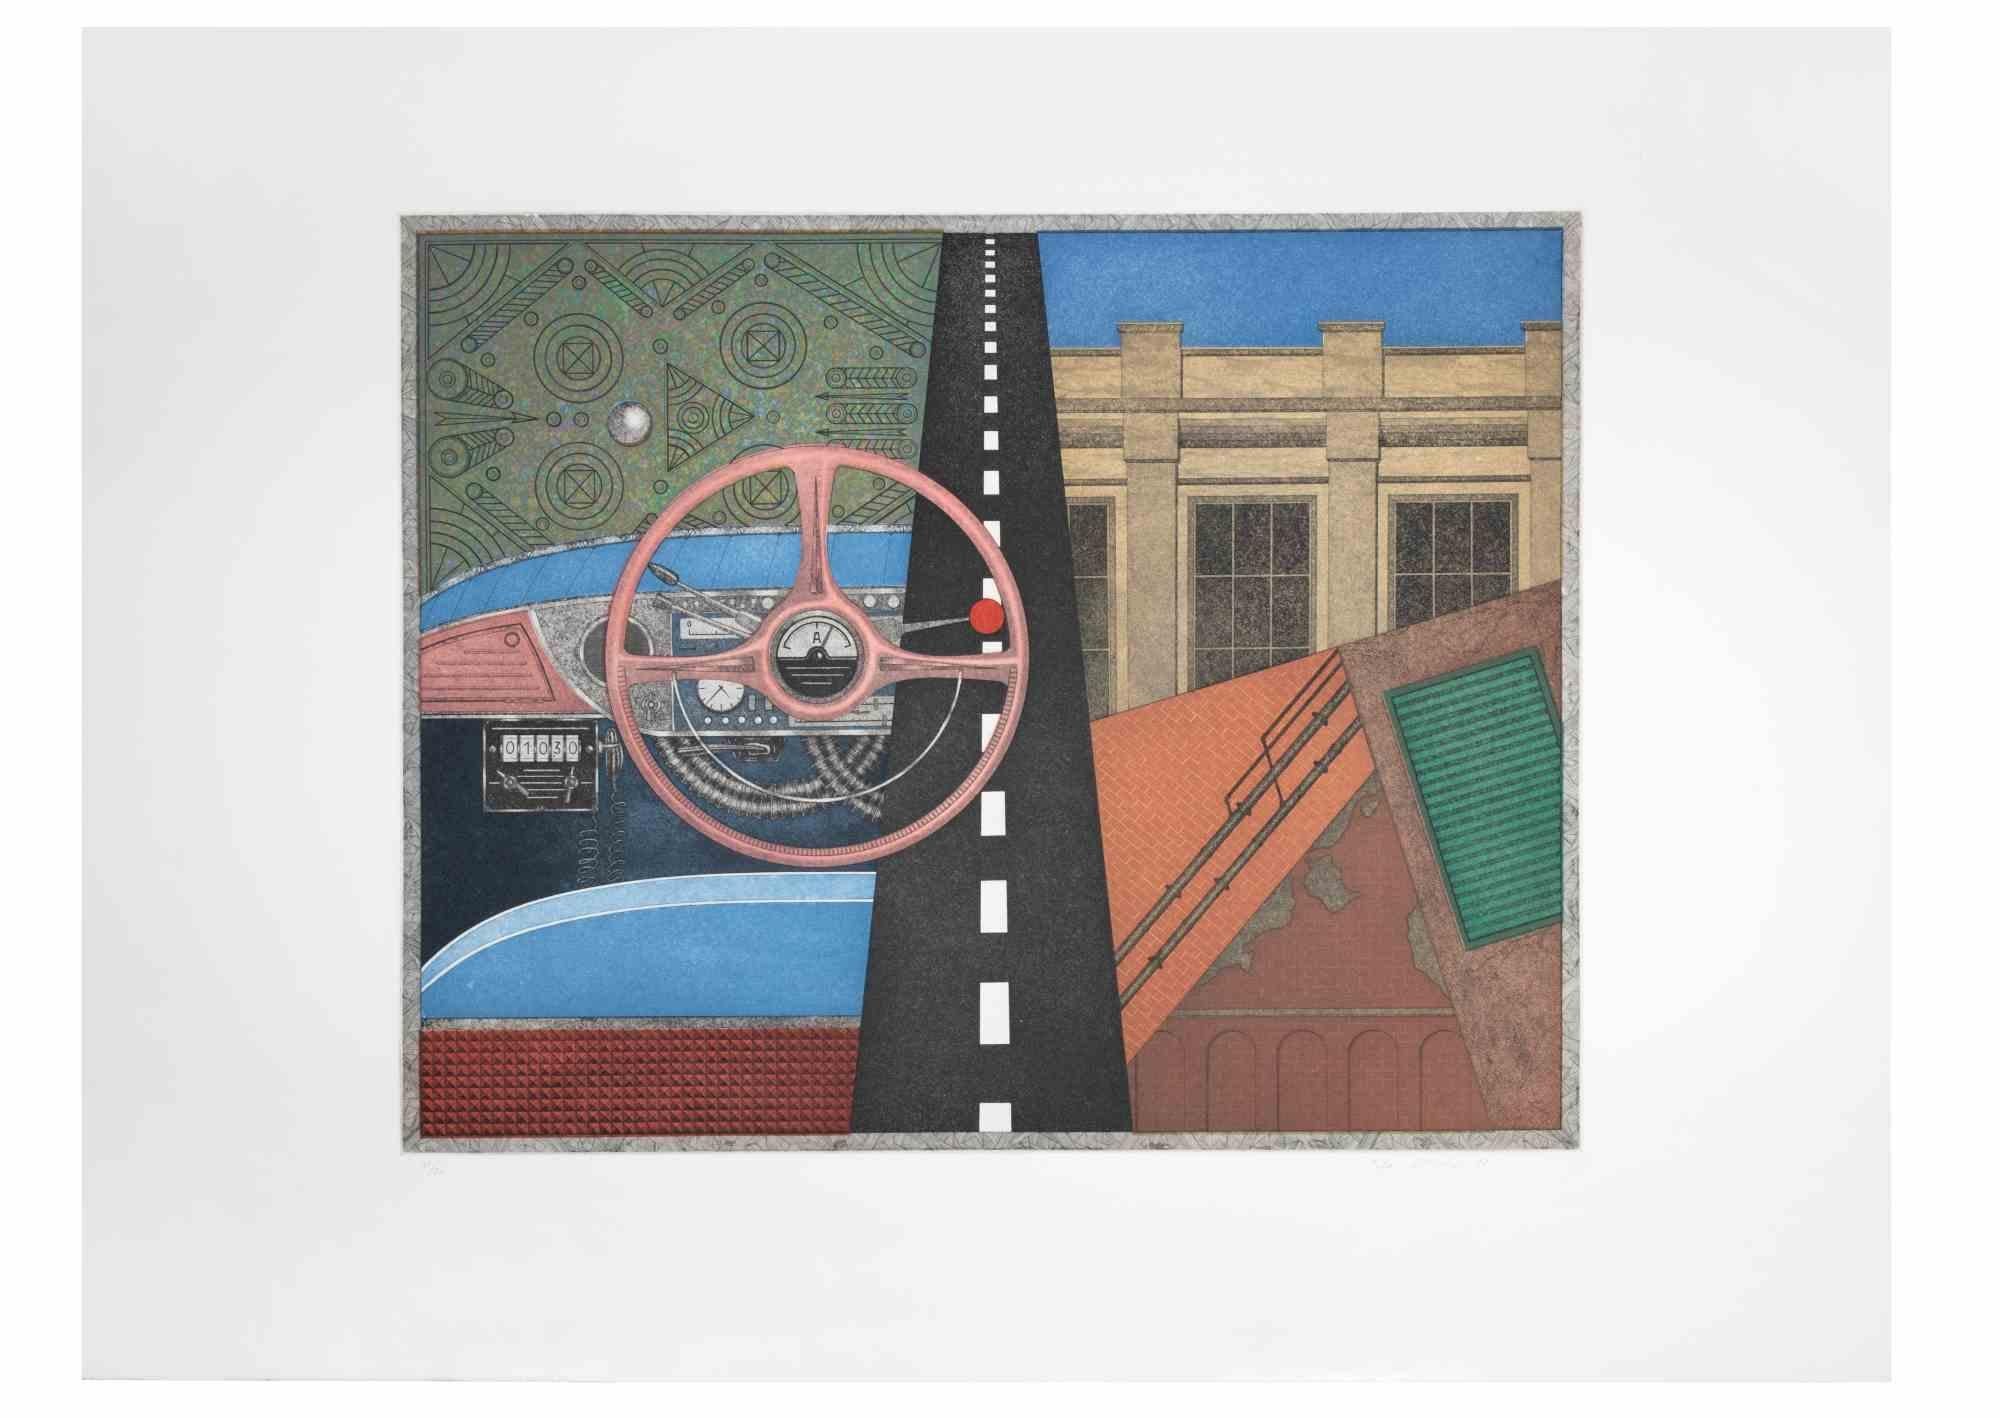 Taxi : volant est une œuvre d'art contemporain réalisée par l'artiste Fifo Stricker en 1982.

Aquatinte et gravure en couleurs mixtes. 

Signé et daté à la main par l'artiste dans la marge inférieure droite.

Numéroté dans la marge inférieure